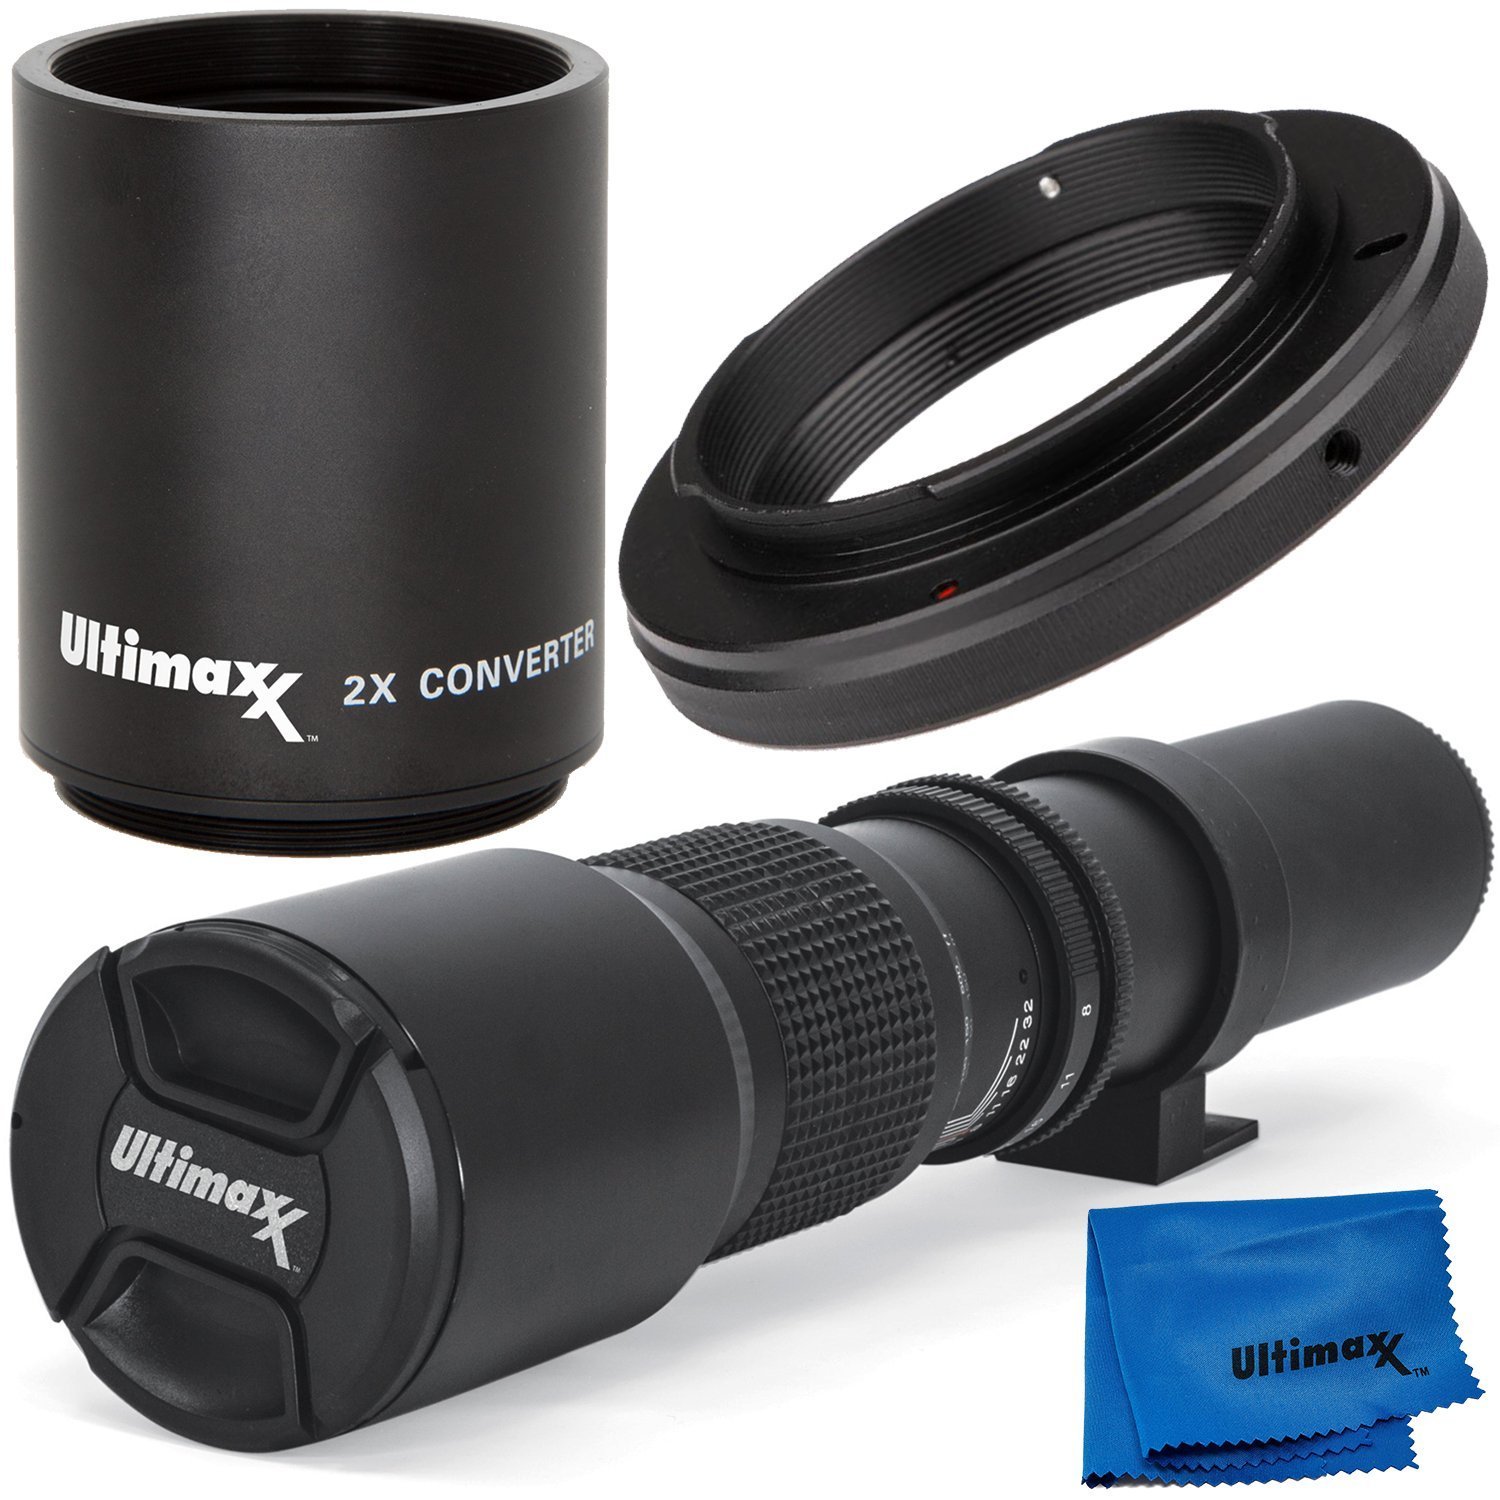 Ultimaxx 500mm/1000mm f/8 Preset Telephoto Lens Kit for Canon EOS 80D,77D,70D,60D,60Da,50D,7D,7D II,6D,6D II,5D Mark II,III,IV,5DS,1DS,T7i,T7s,T7,T6s,T6i,T6,T5i,T5,T4i,SL2 & SL1 Digital SLR Cameras